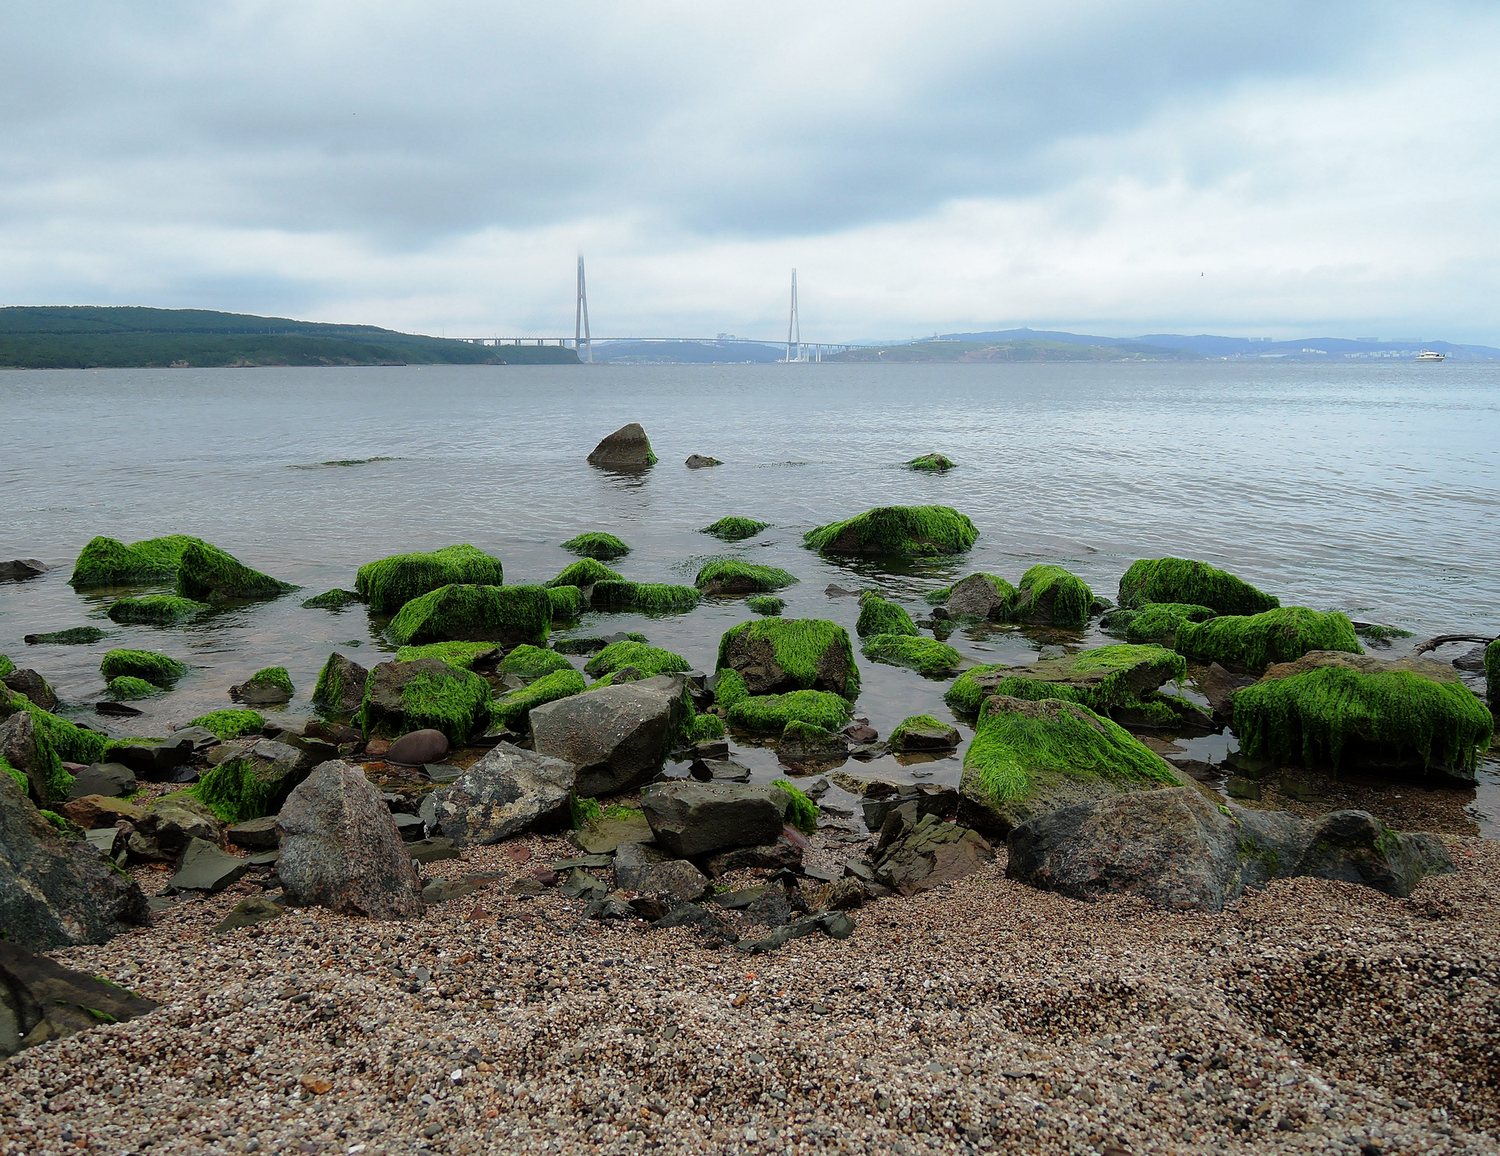  Остров Русский: Камни, покрытые водорослями. обнажились во время отлива